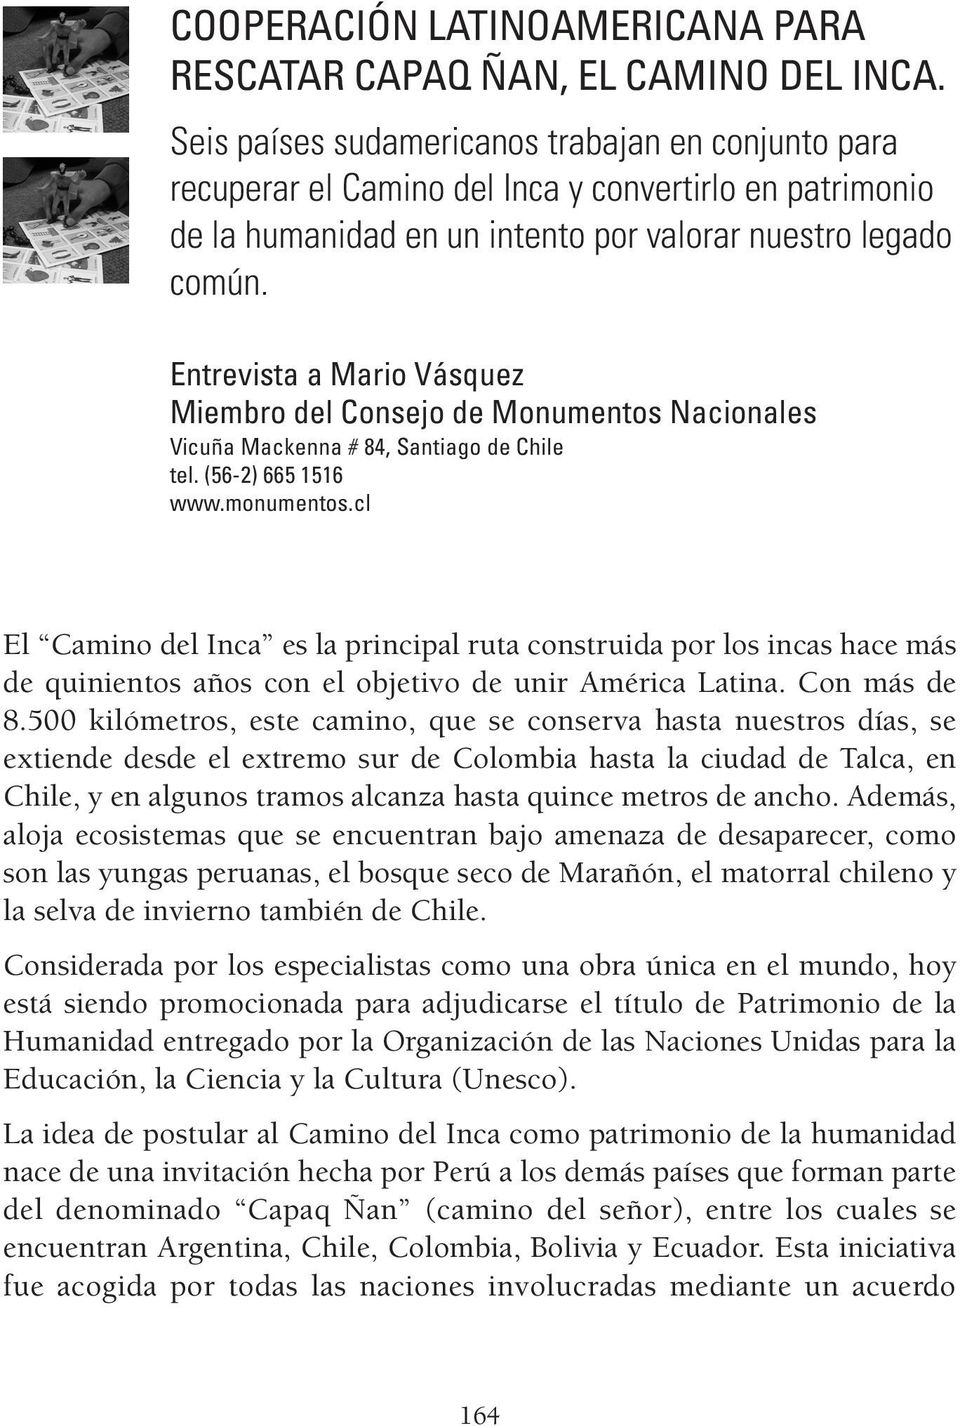 Entrevista a Mario Vásquez Miembro del Consejo de Monumentos Nacionales Vicuña Mackenna # 84, Santiago de Chile tel. (56-2) 665 1516 www.monumentos.